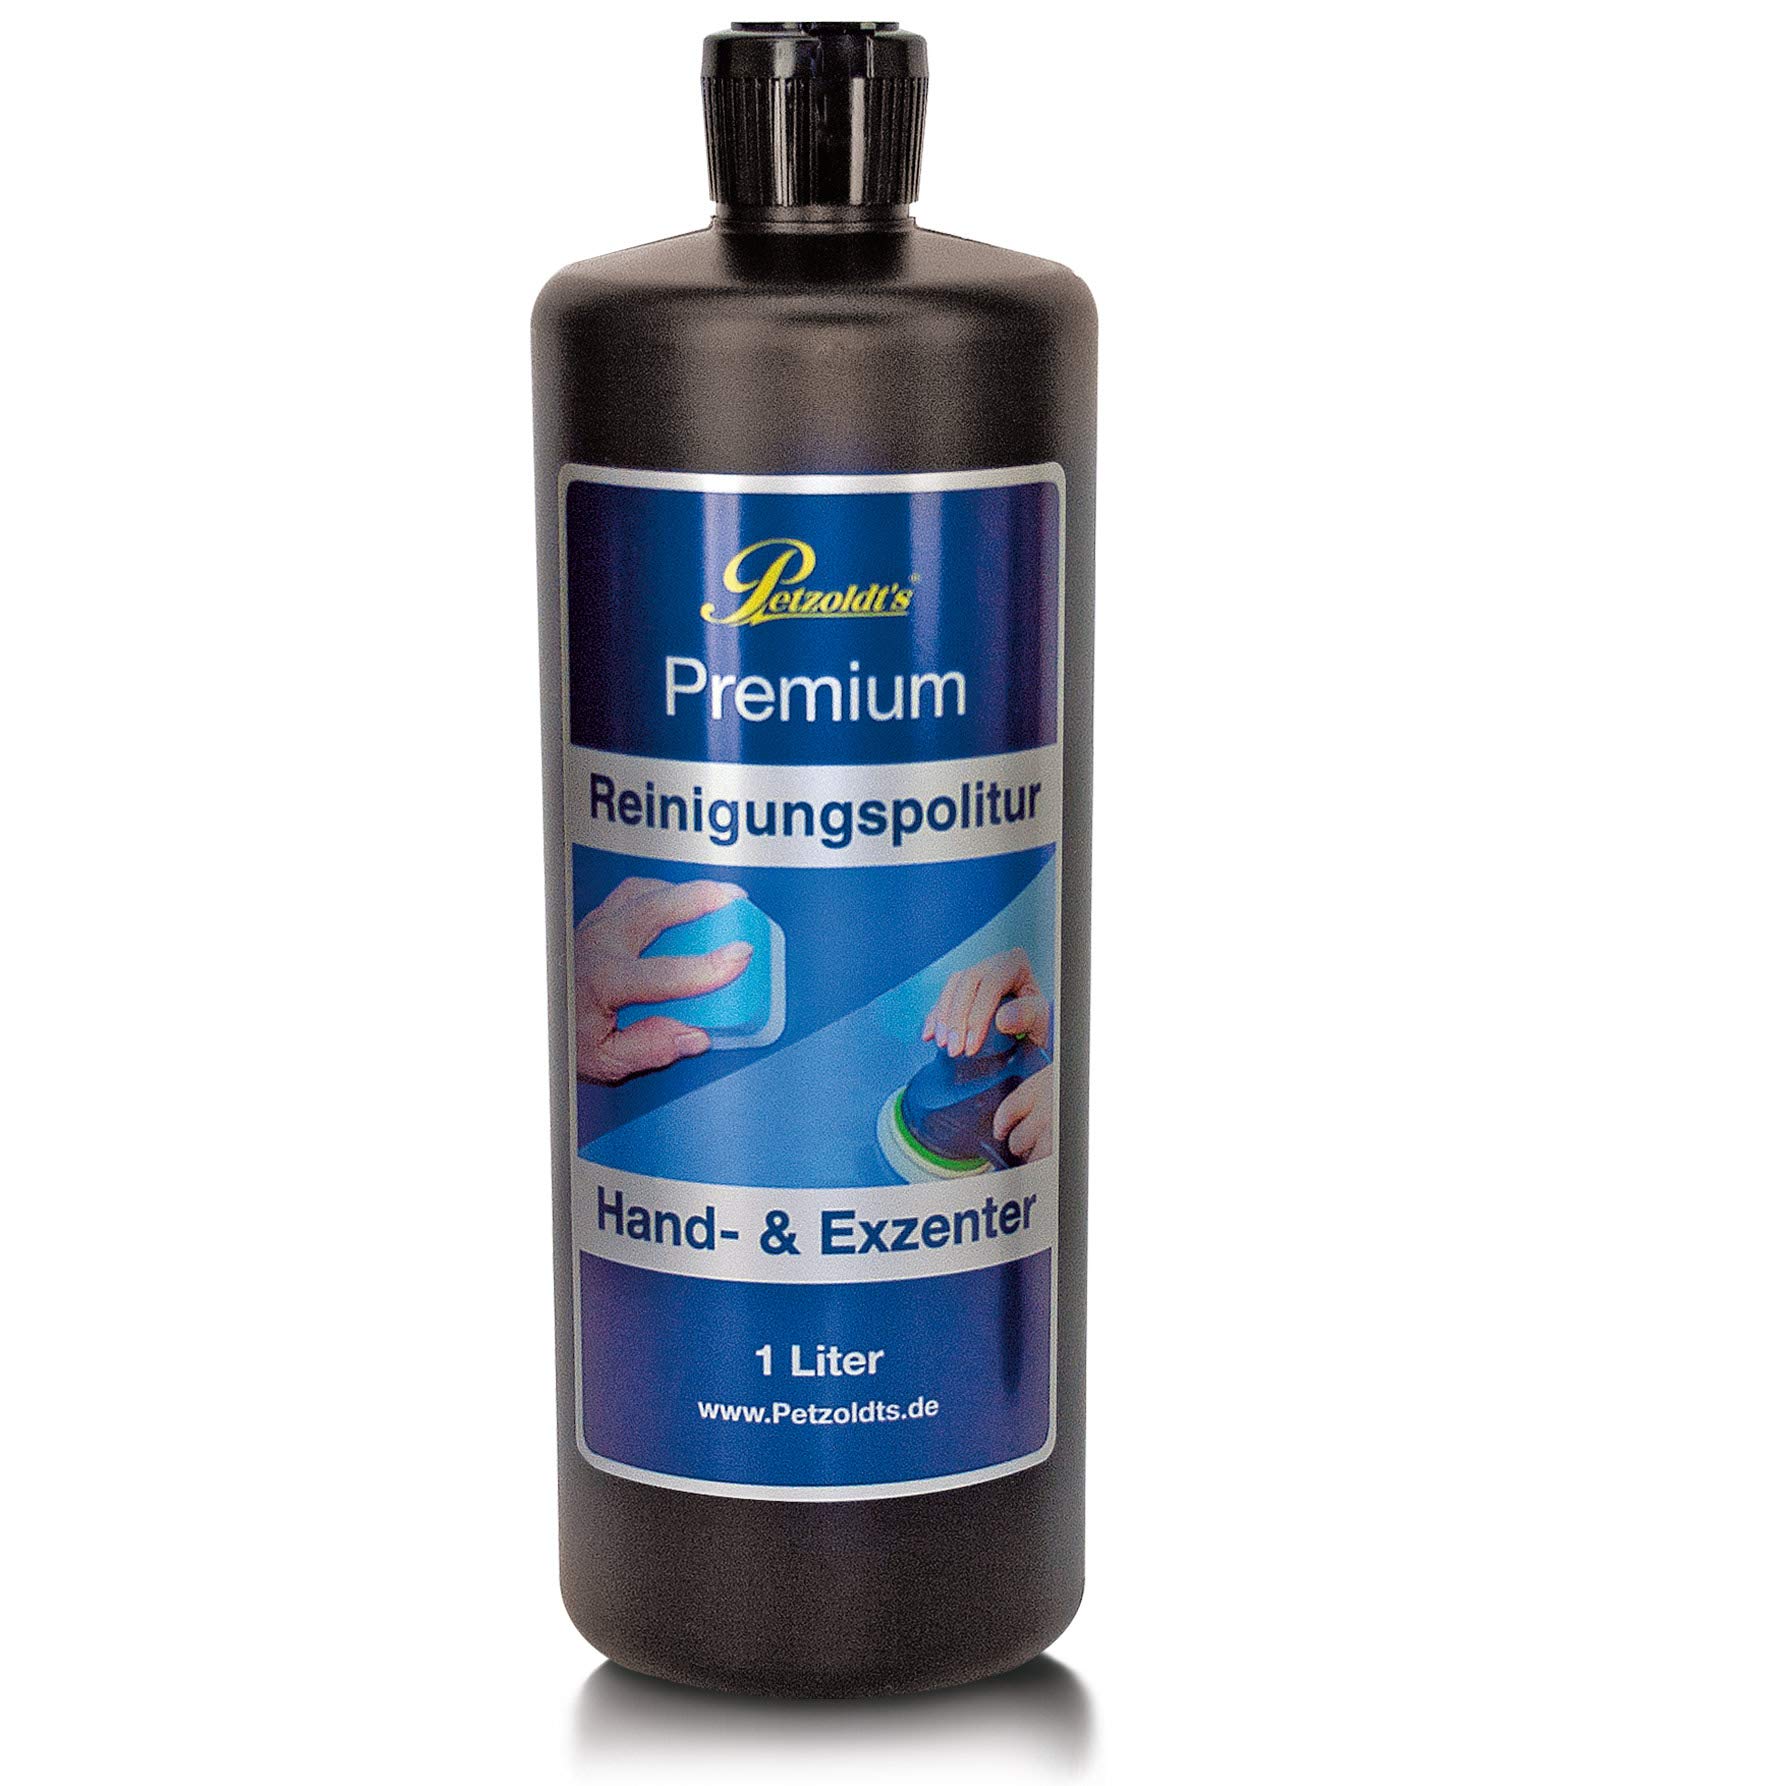 1 Liter Premium Reinigungspolitur, Hand und Exzenter-Poliermaschine, silikonfreie Lackreinigung, Petzoldt's von Petzoldt's